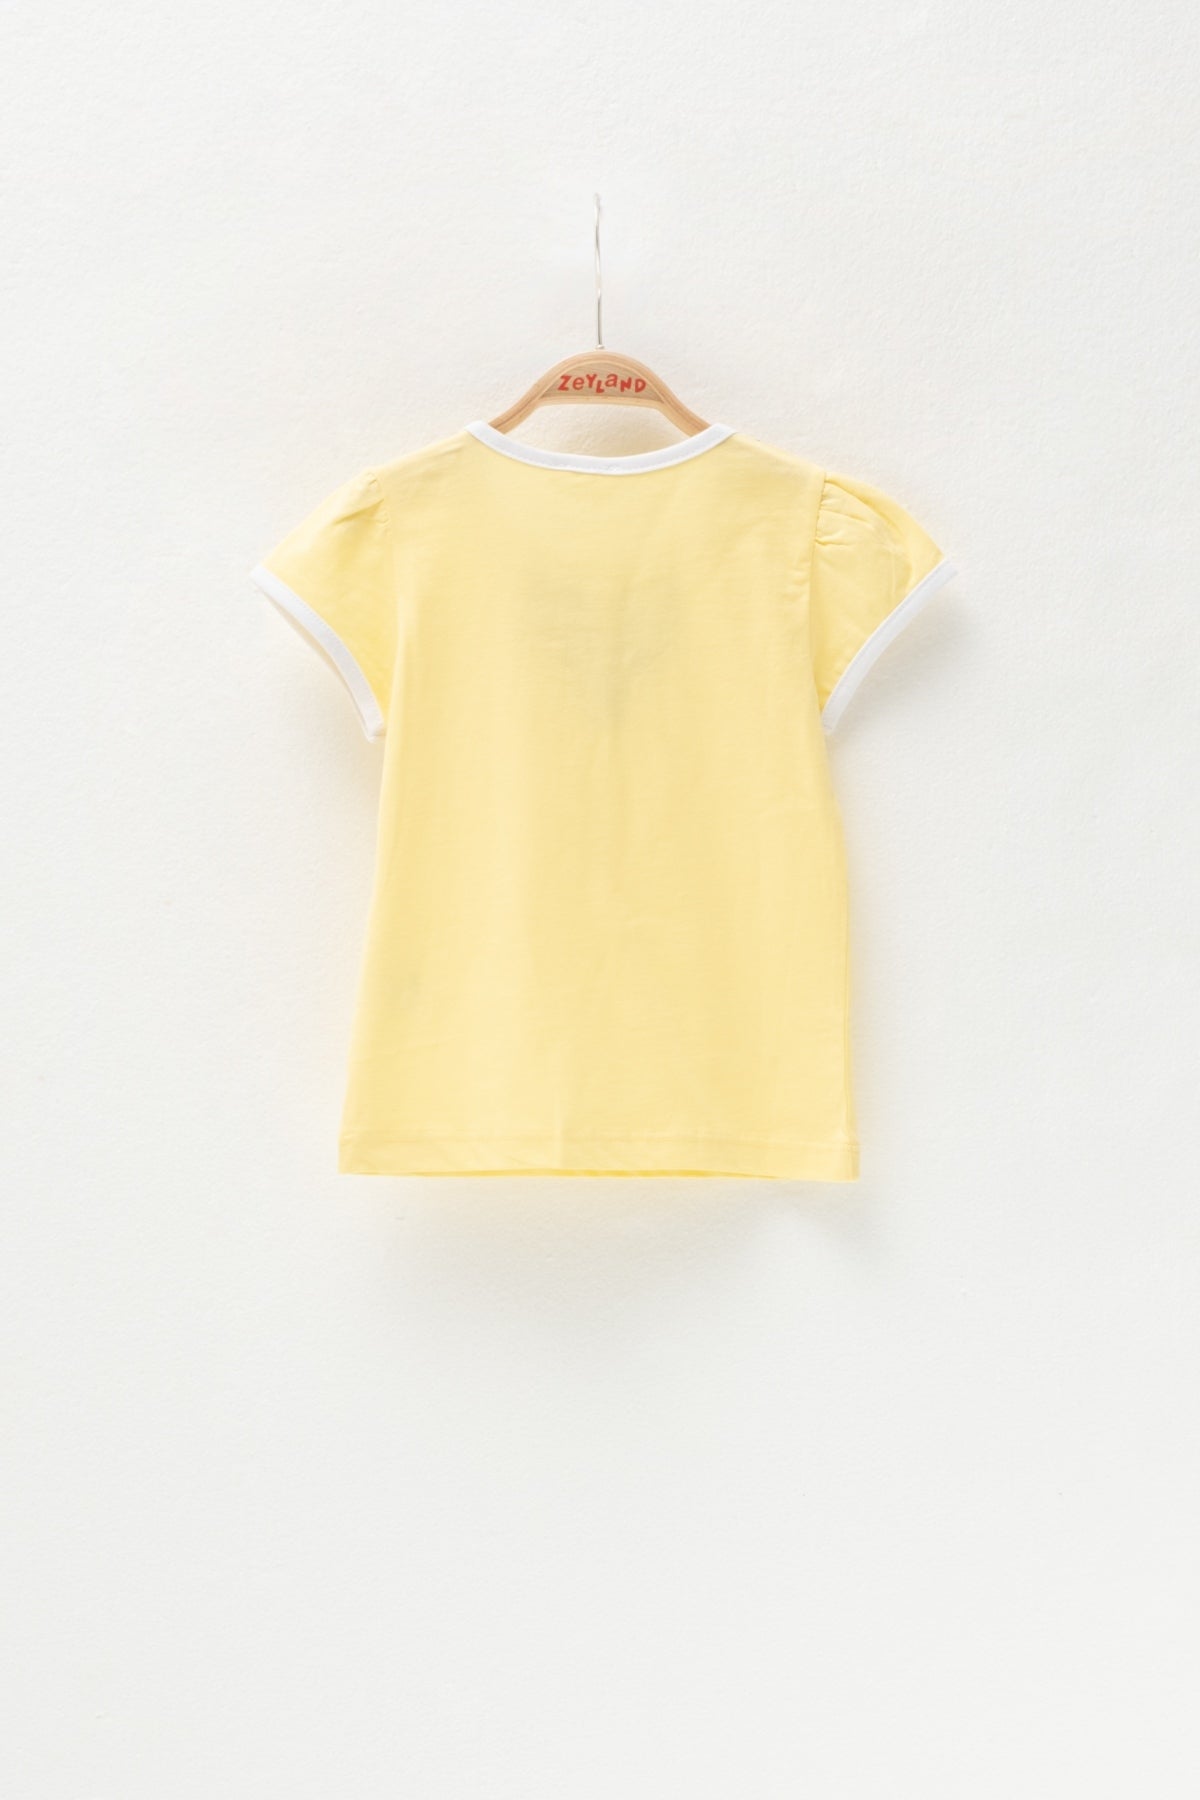 Kız Bebek Sarı Çiçek Nakışlı T-Shirt (6ay-4yaş)-2